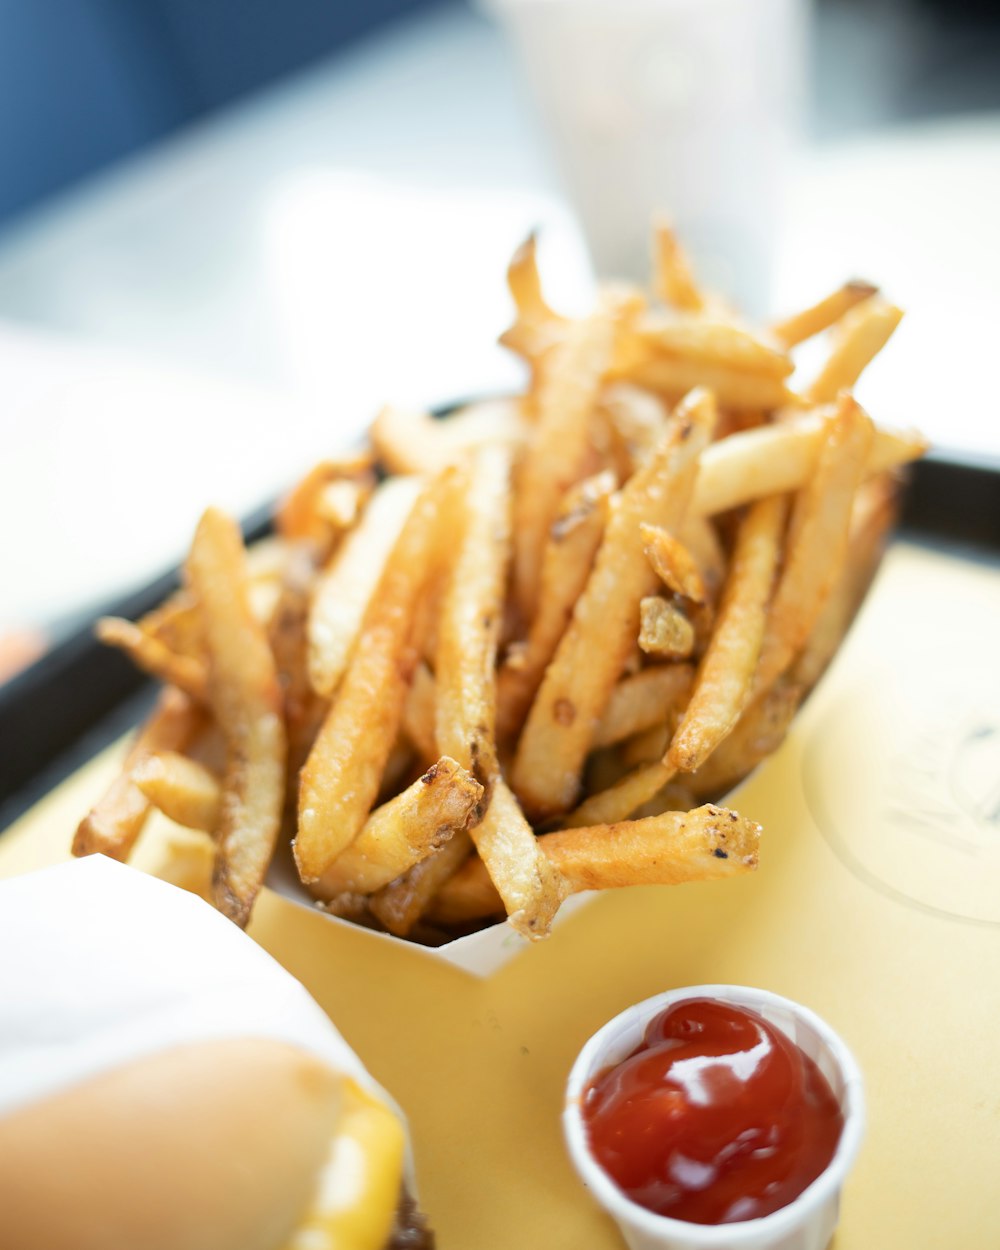 potato fries with tomato sauce dip